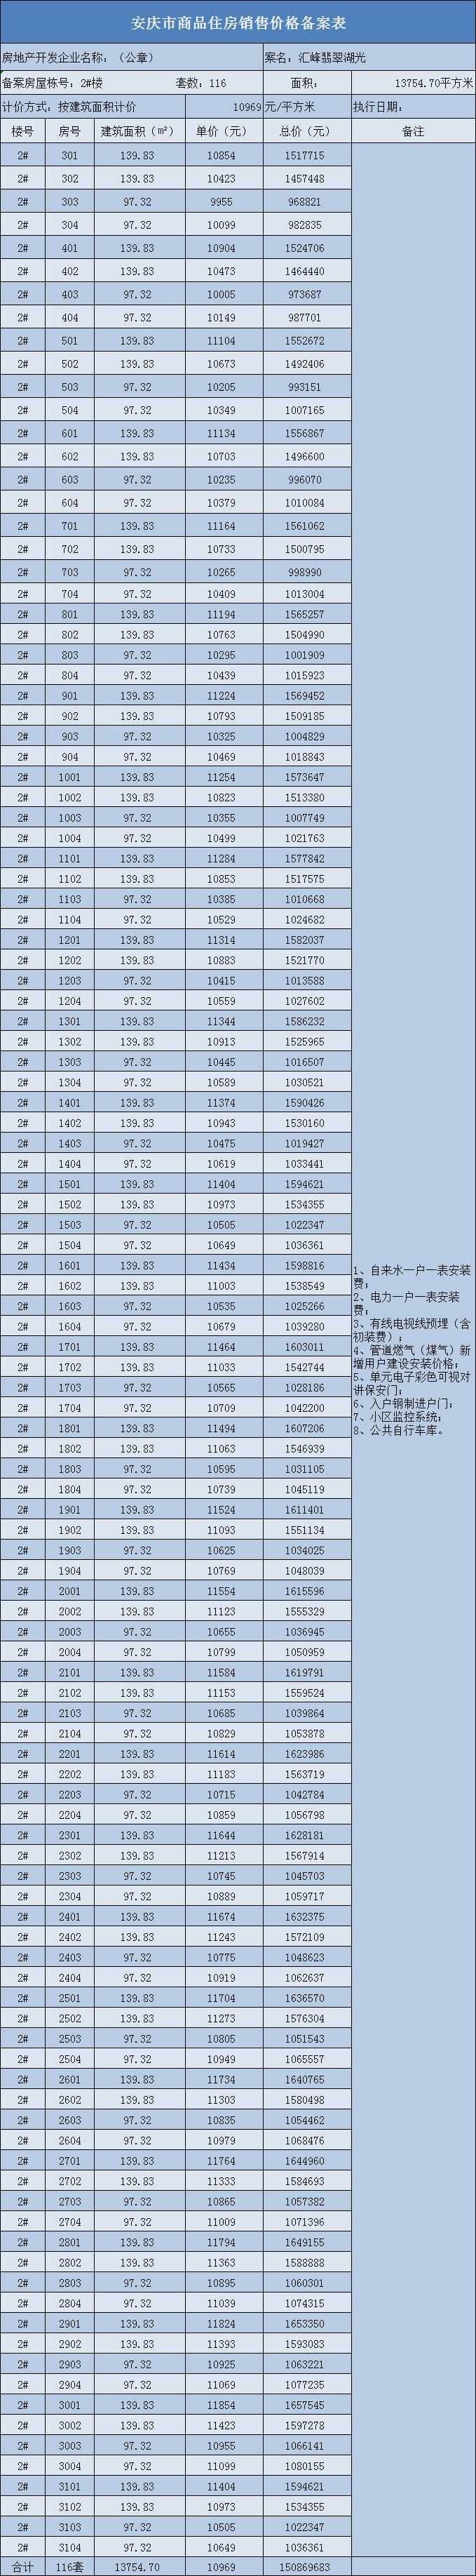 安庆汇峰翡翠湖光共备案住宅116套，备案均价约为10969元/㎡